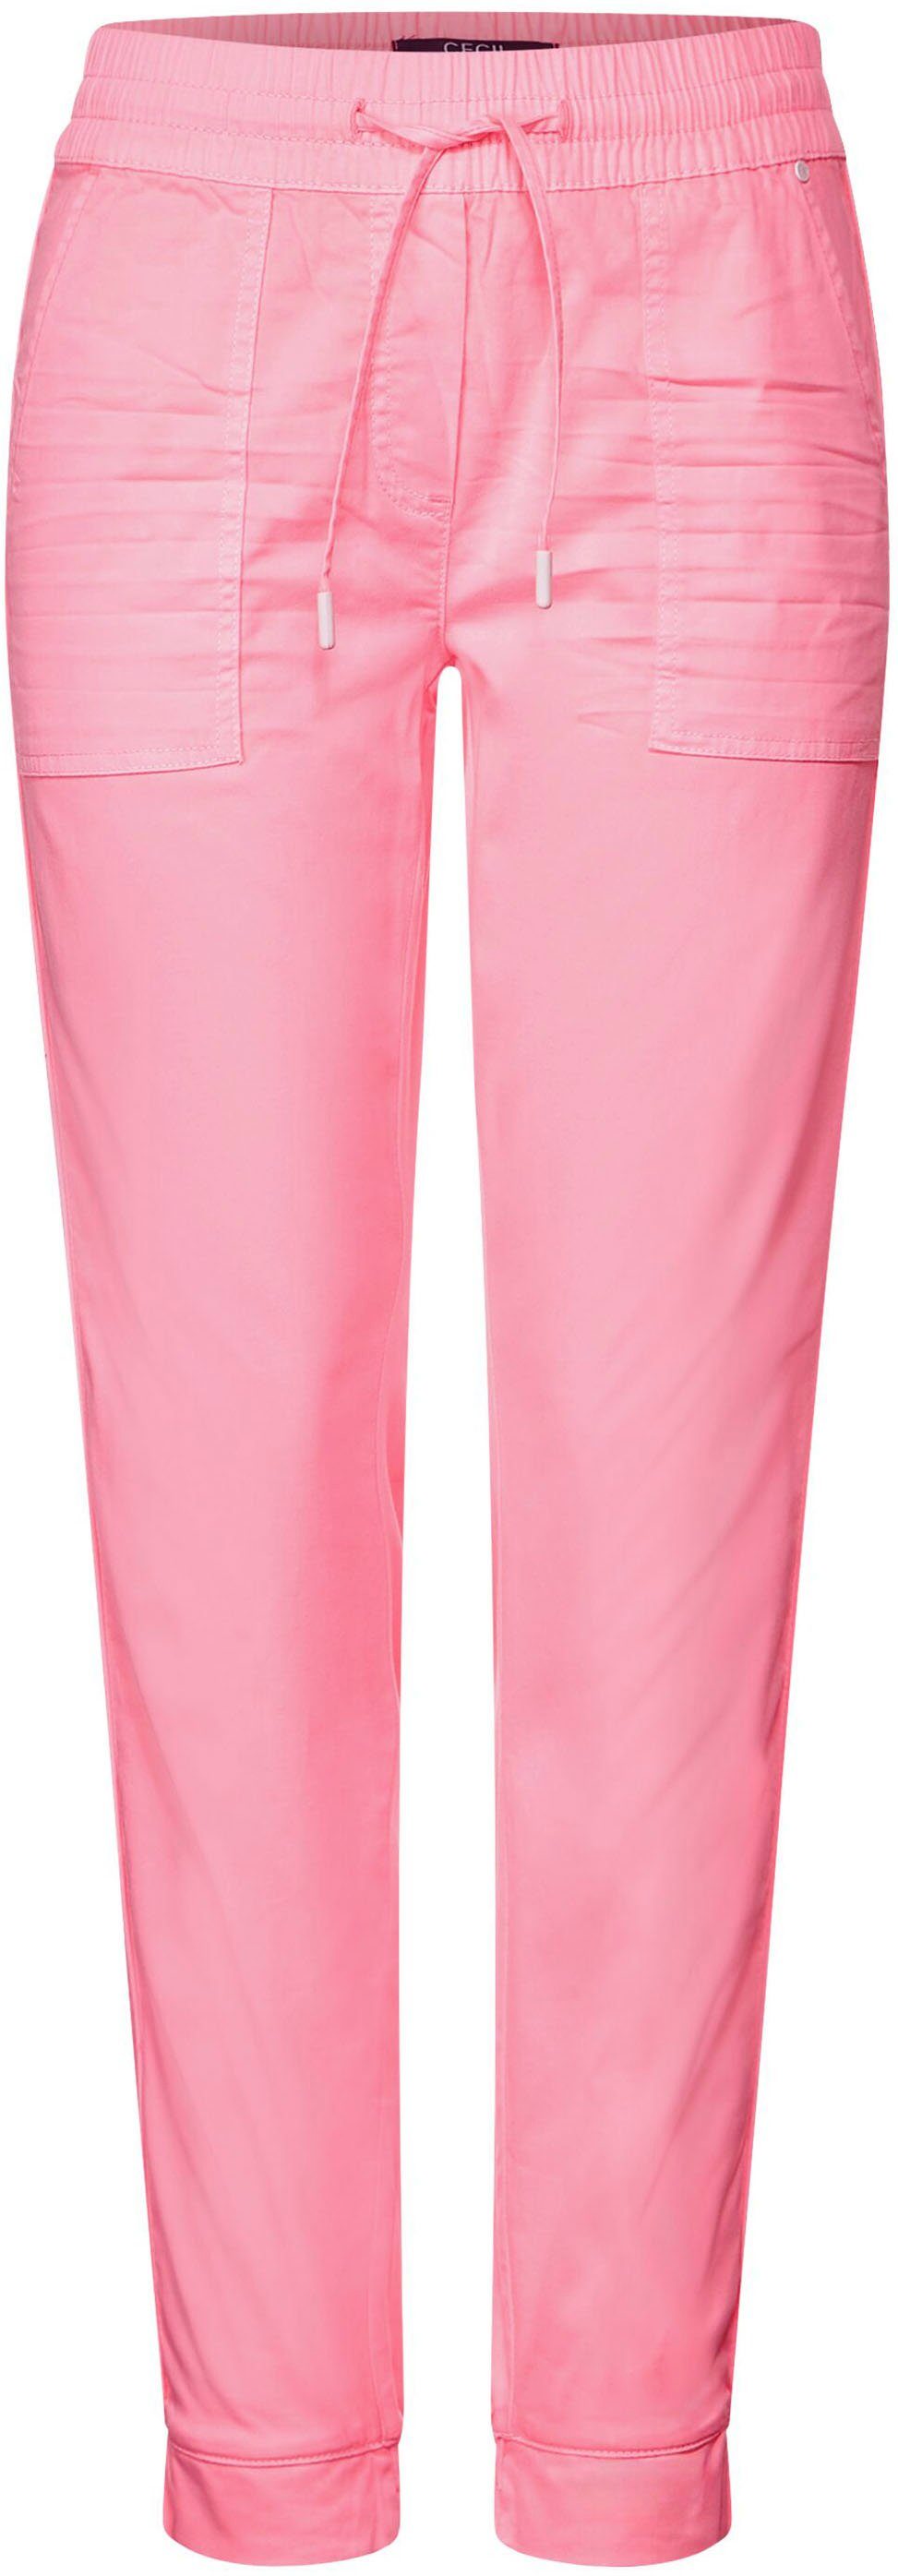 Cecil Outdoorhose mit elastischem Saum Beinabschluss pink soft am neon